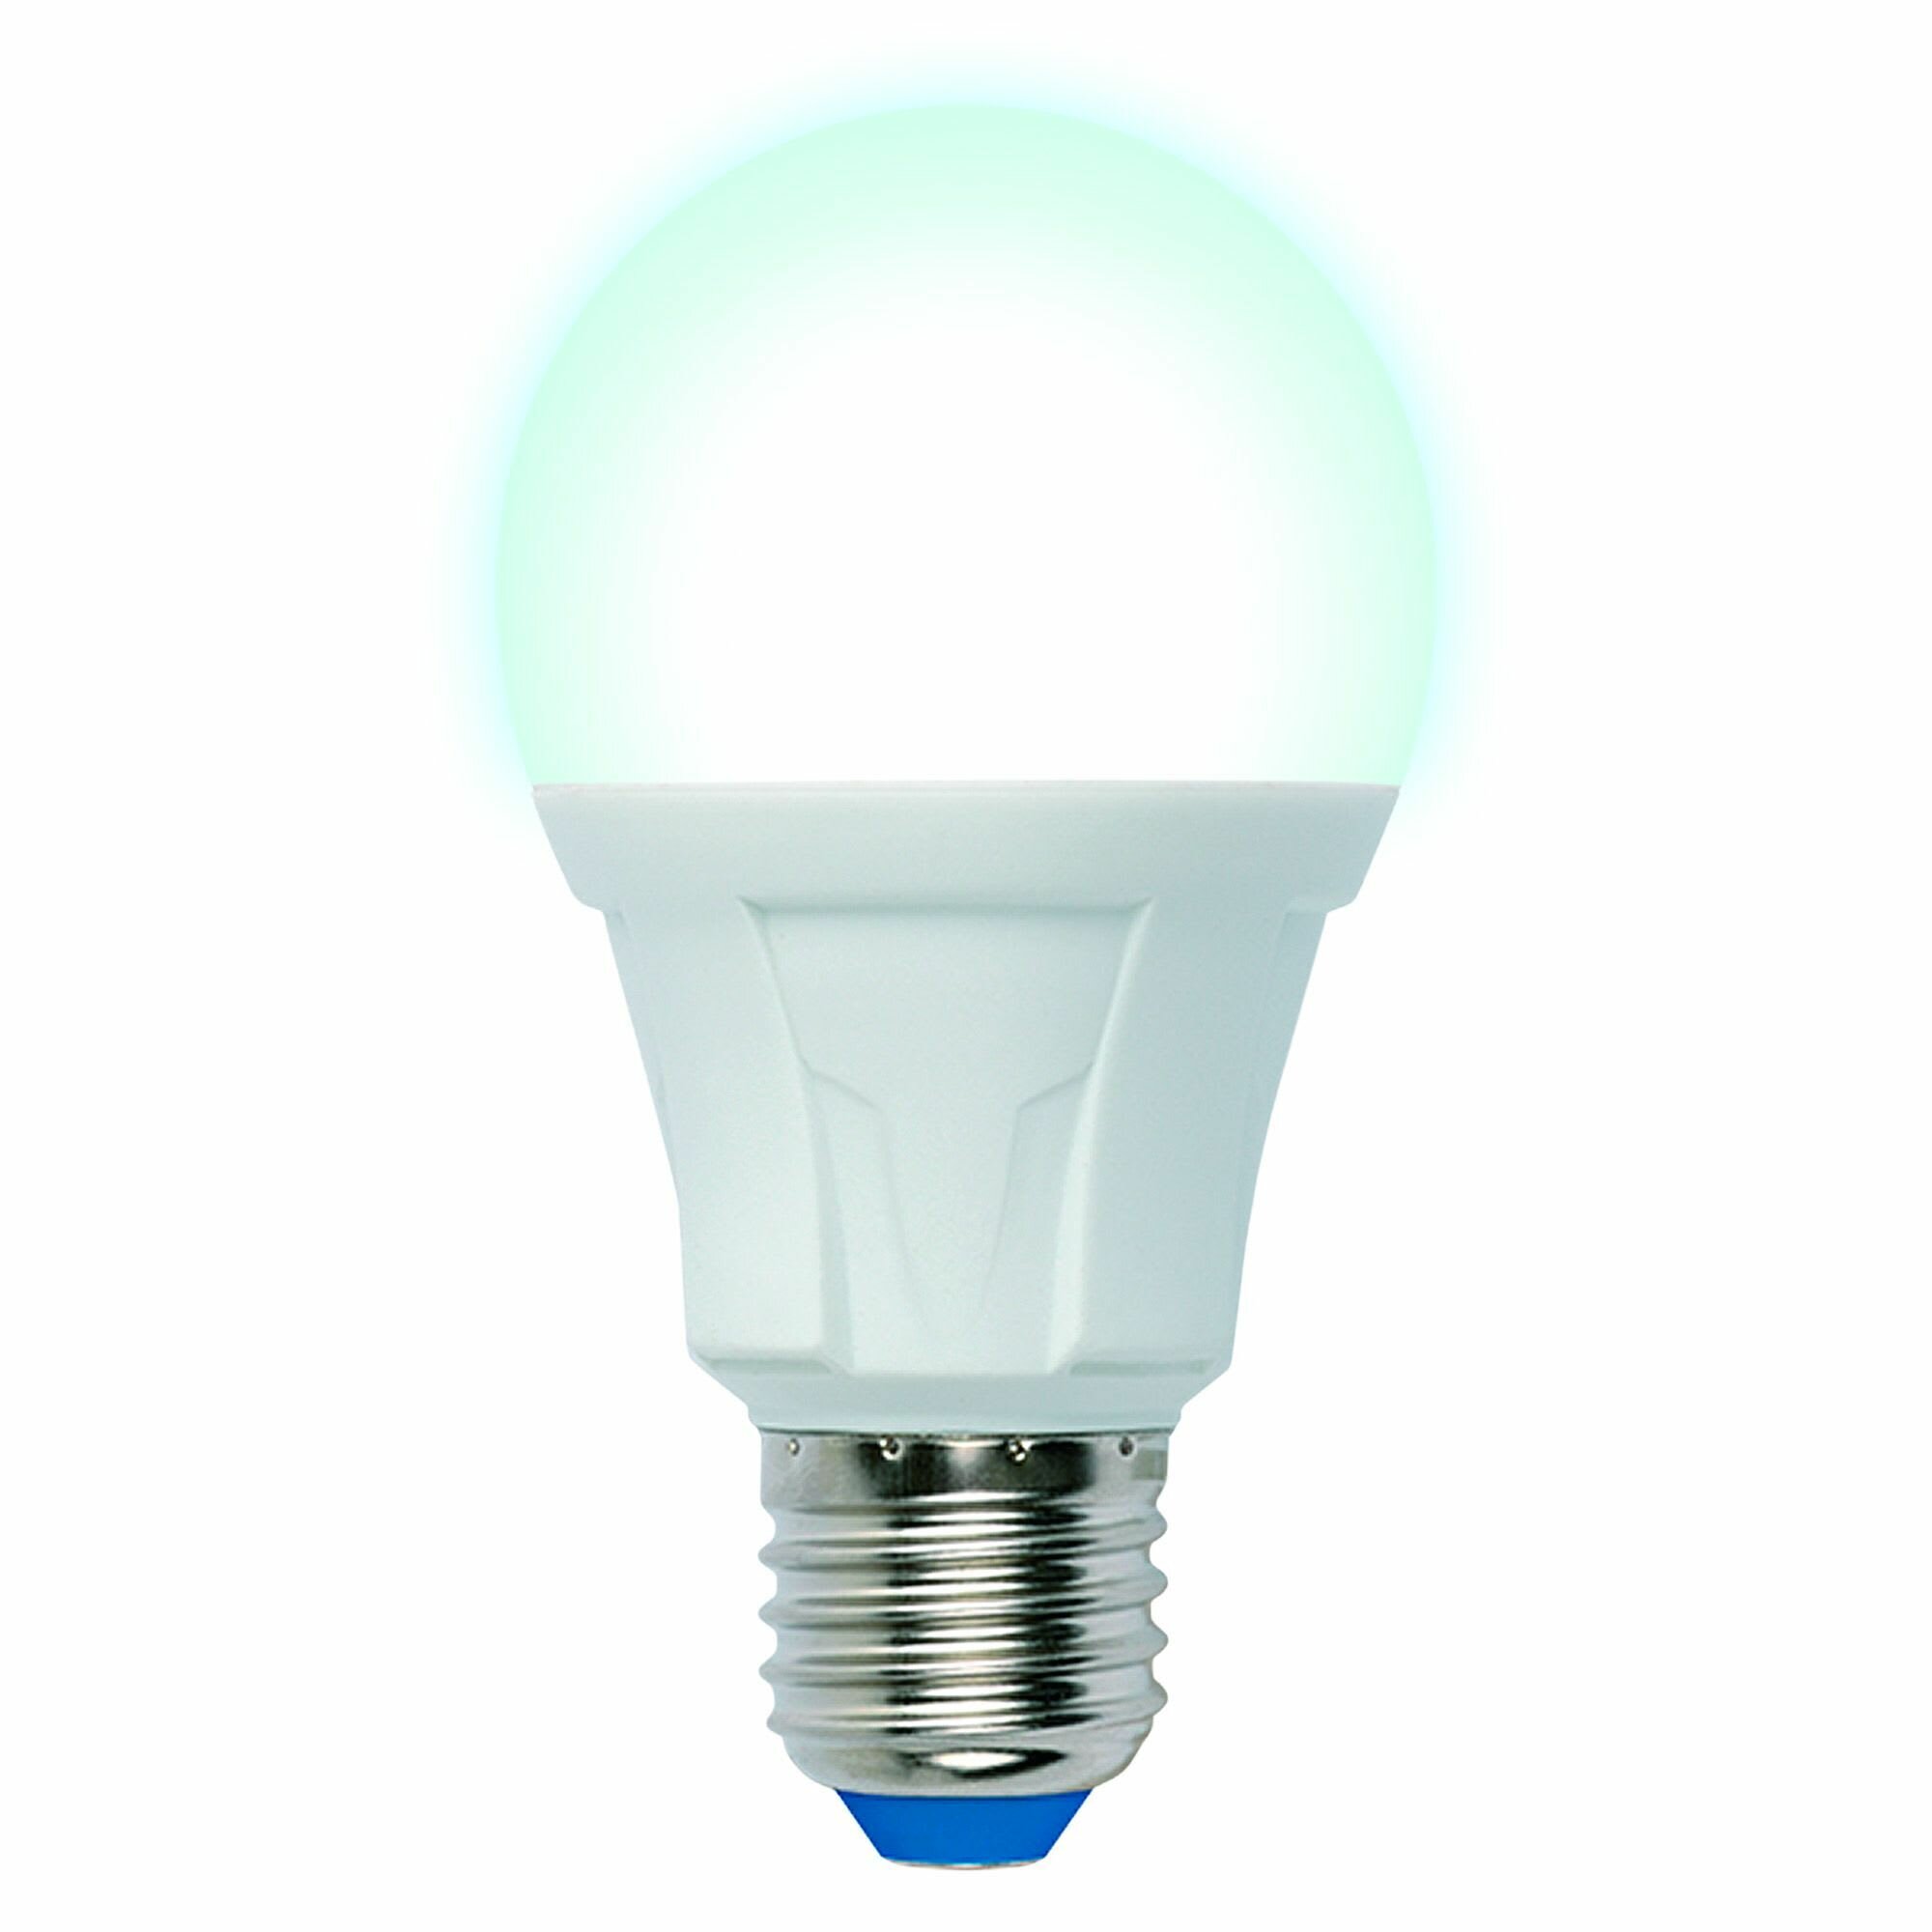 Лампа светодиодная E27 18 Вт груша матовая 1450 лм холодный белый свет. Набор из 2 шт.